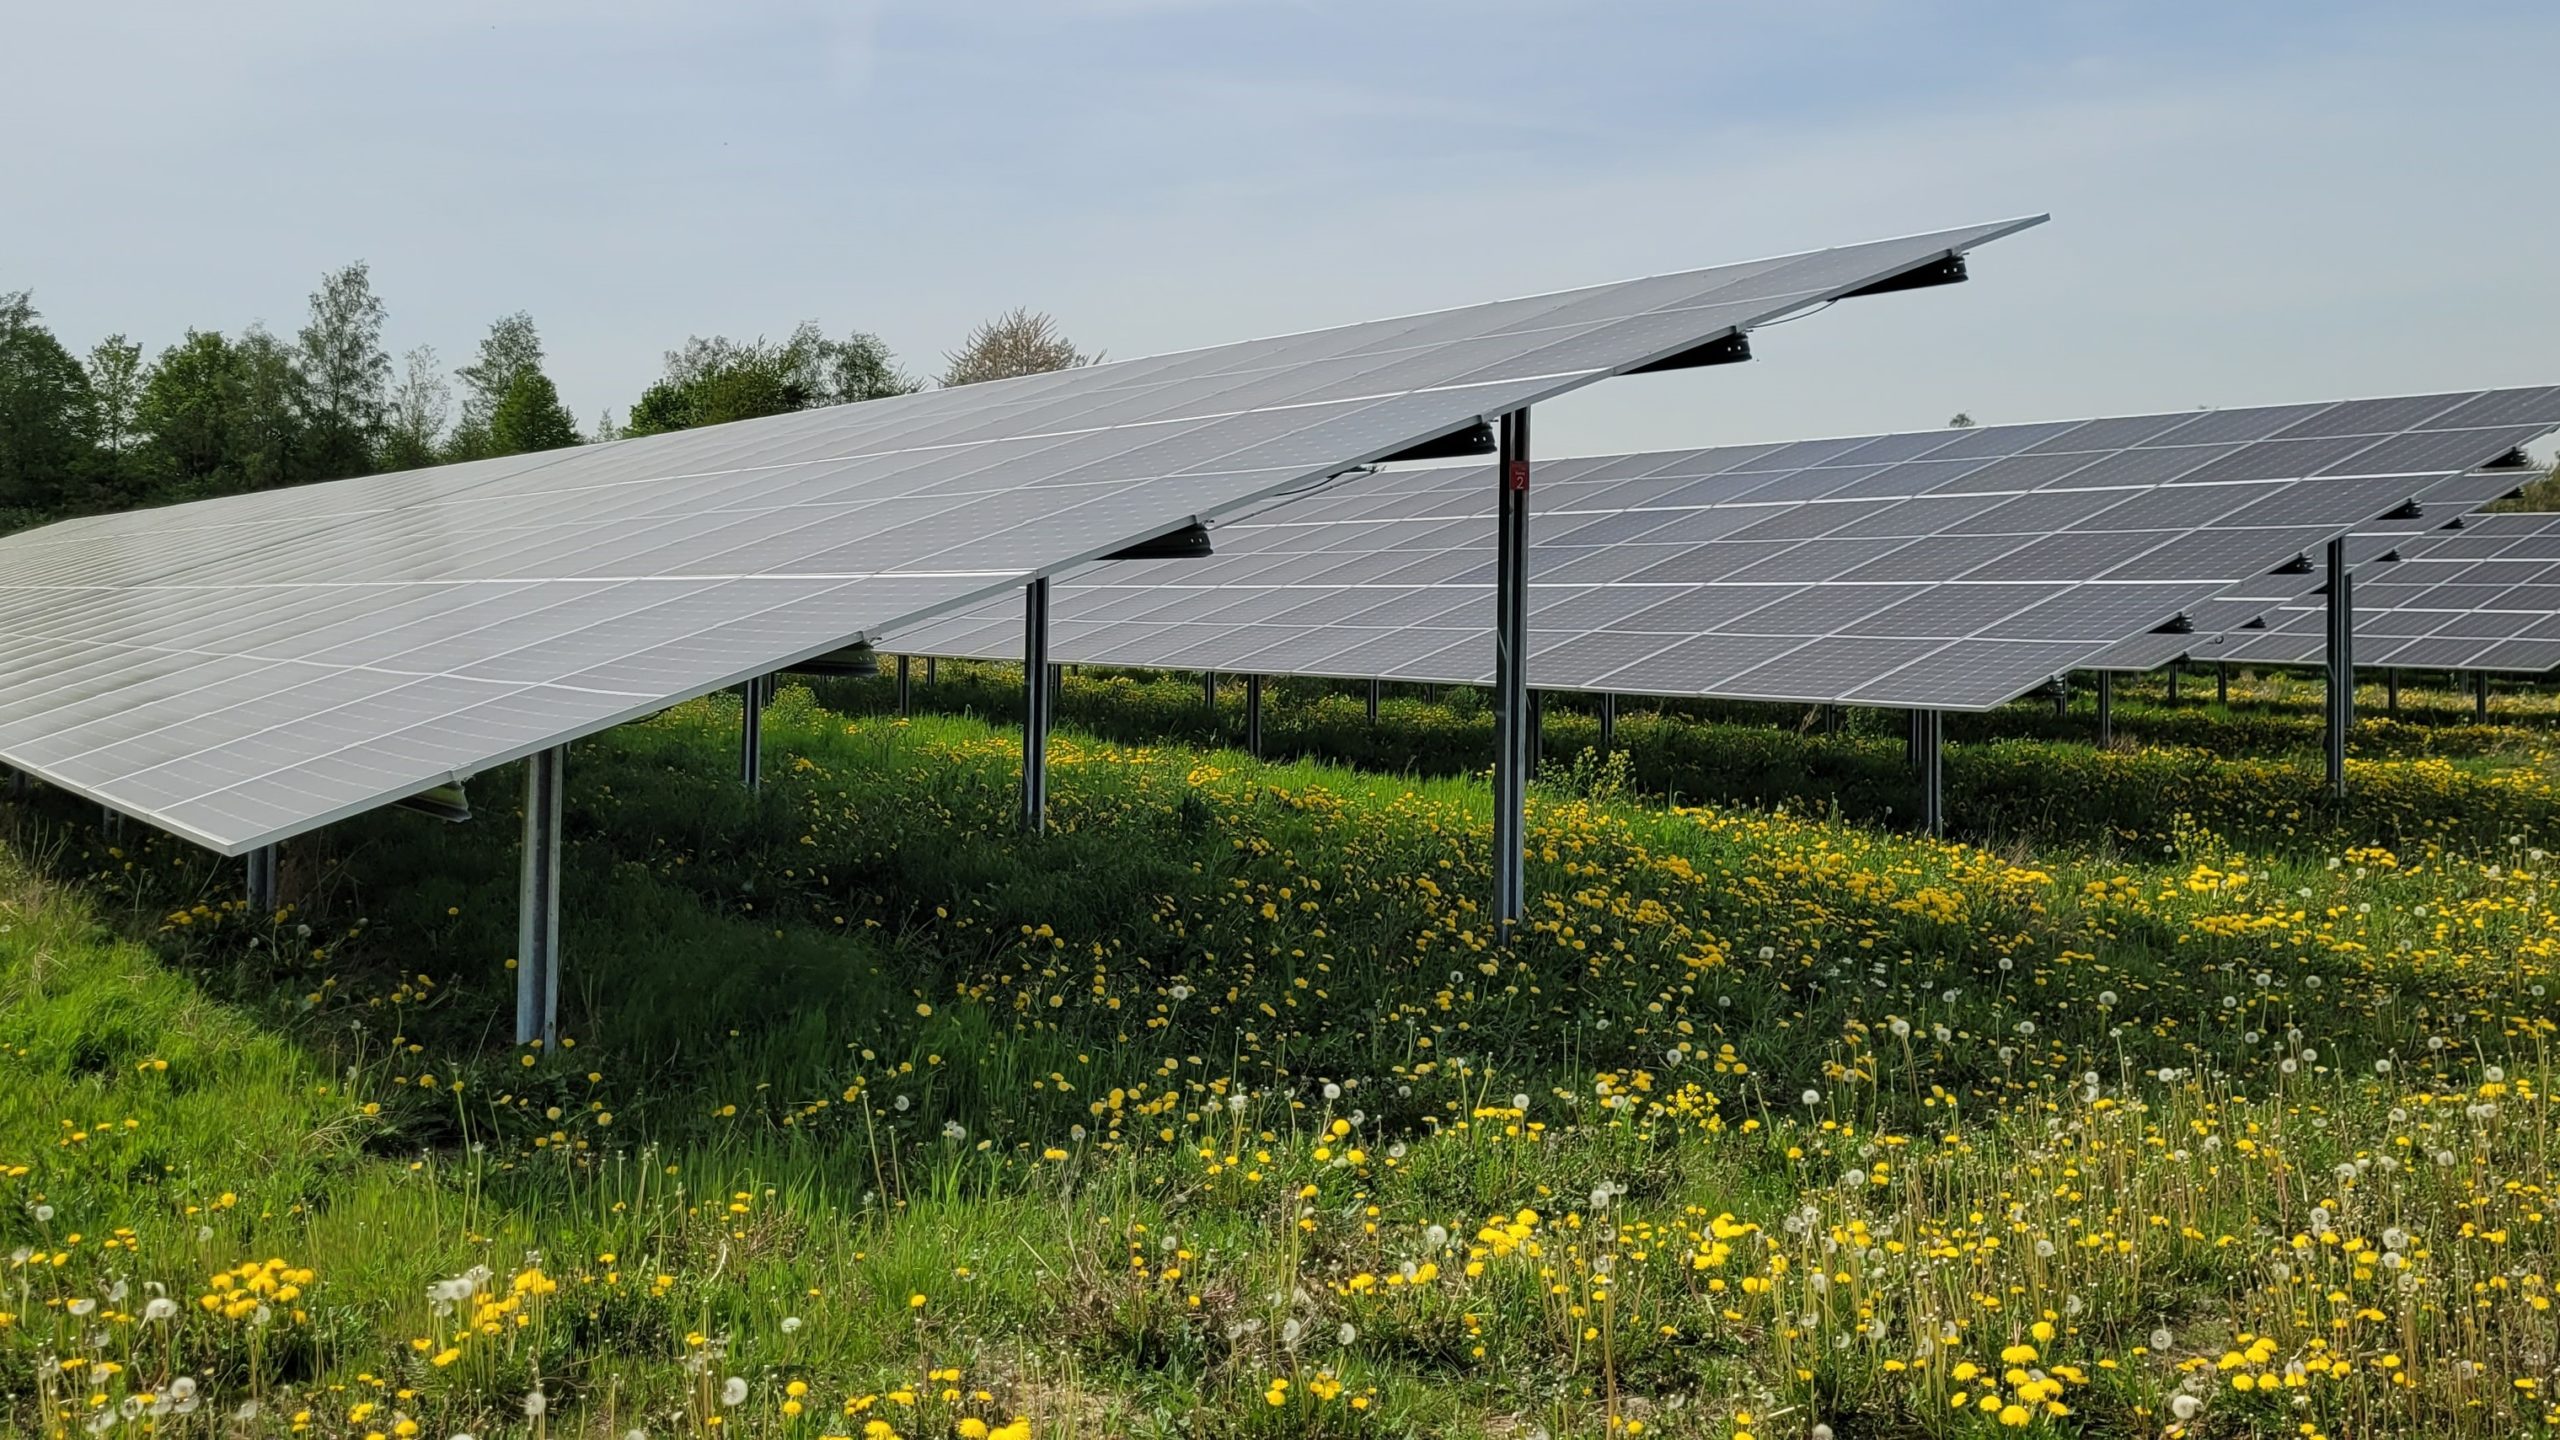 Solarpaket I verabschiedet – Das ändert sich für die Photovoltaik in Deutschland